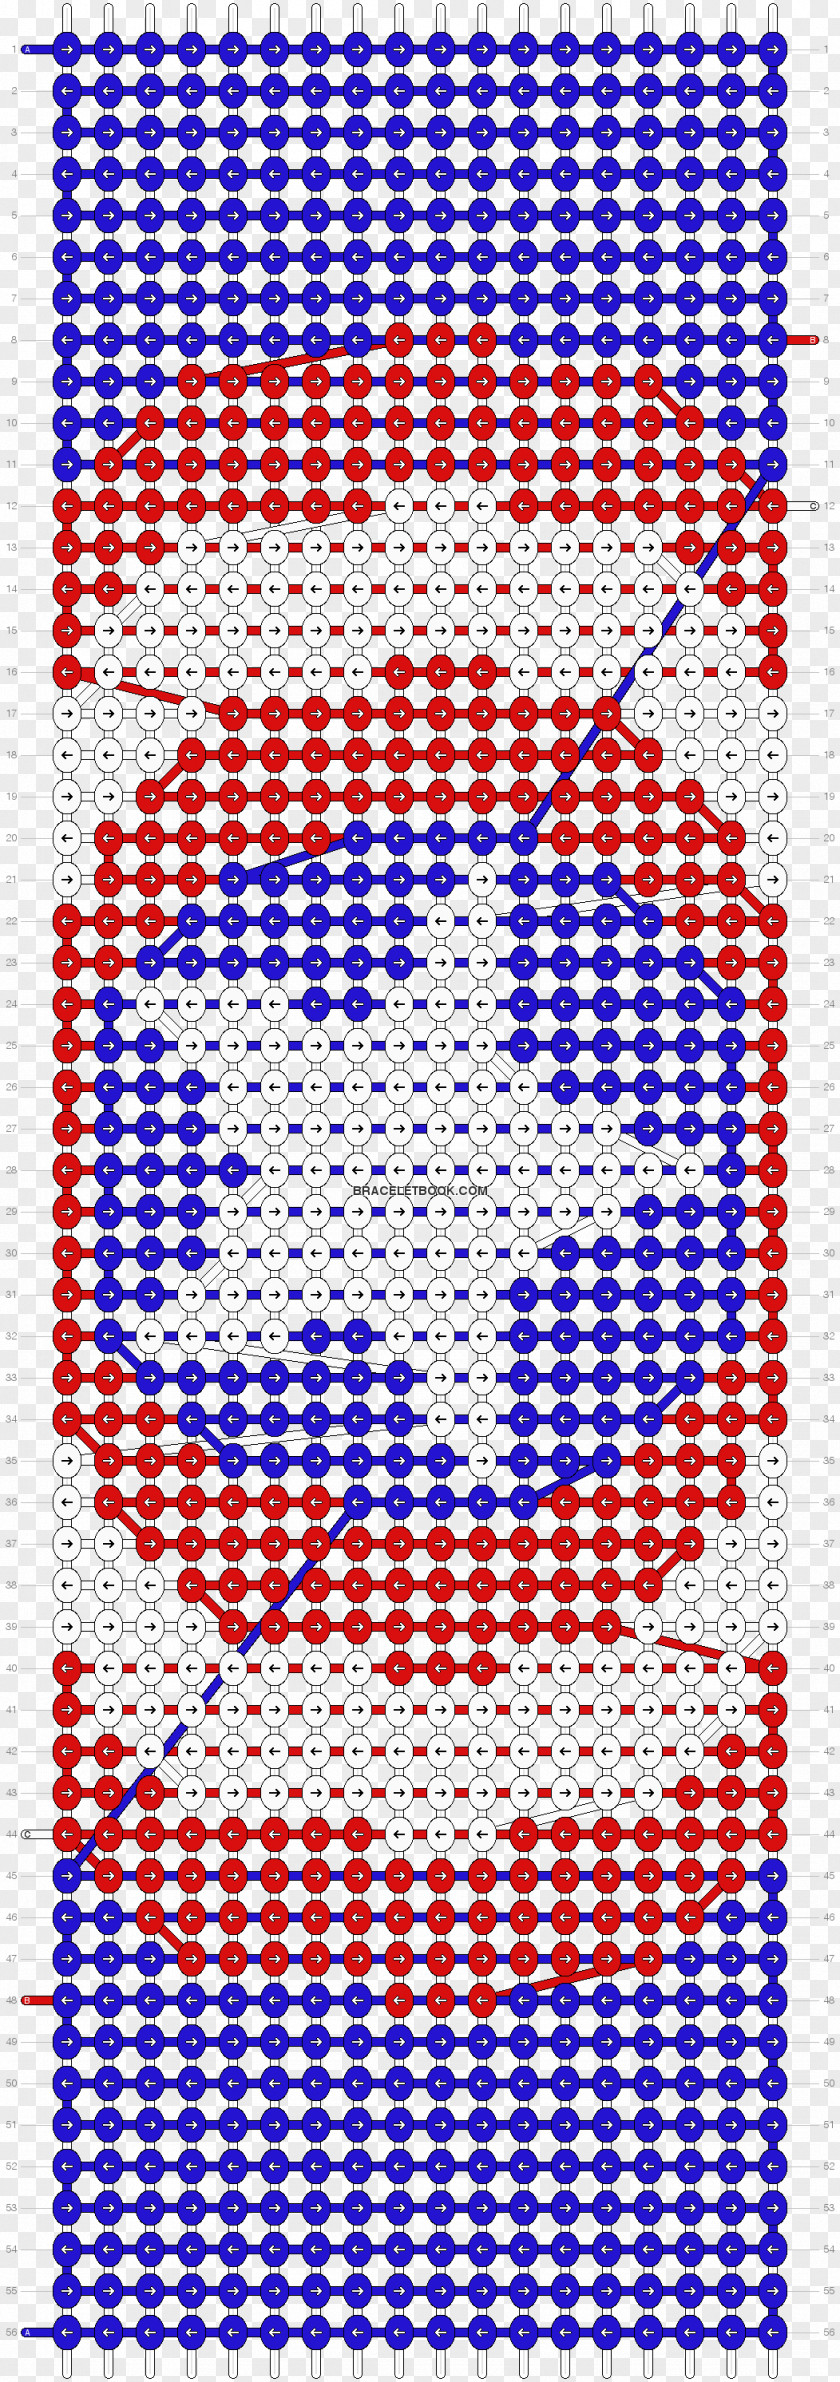 Friendship Bracelet Pattern Cross-stitch Embroidery PNG